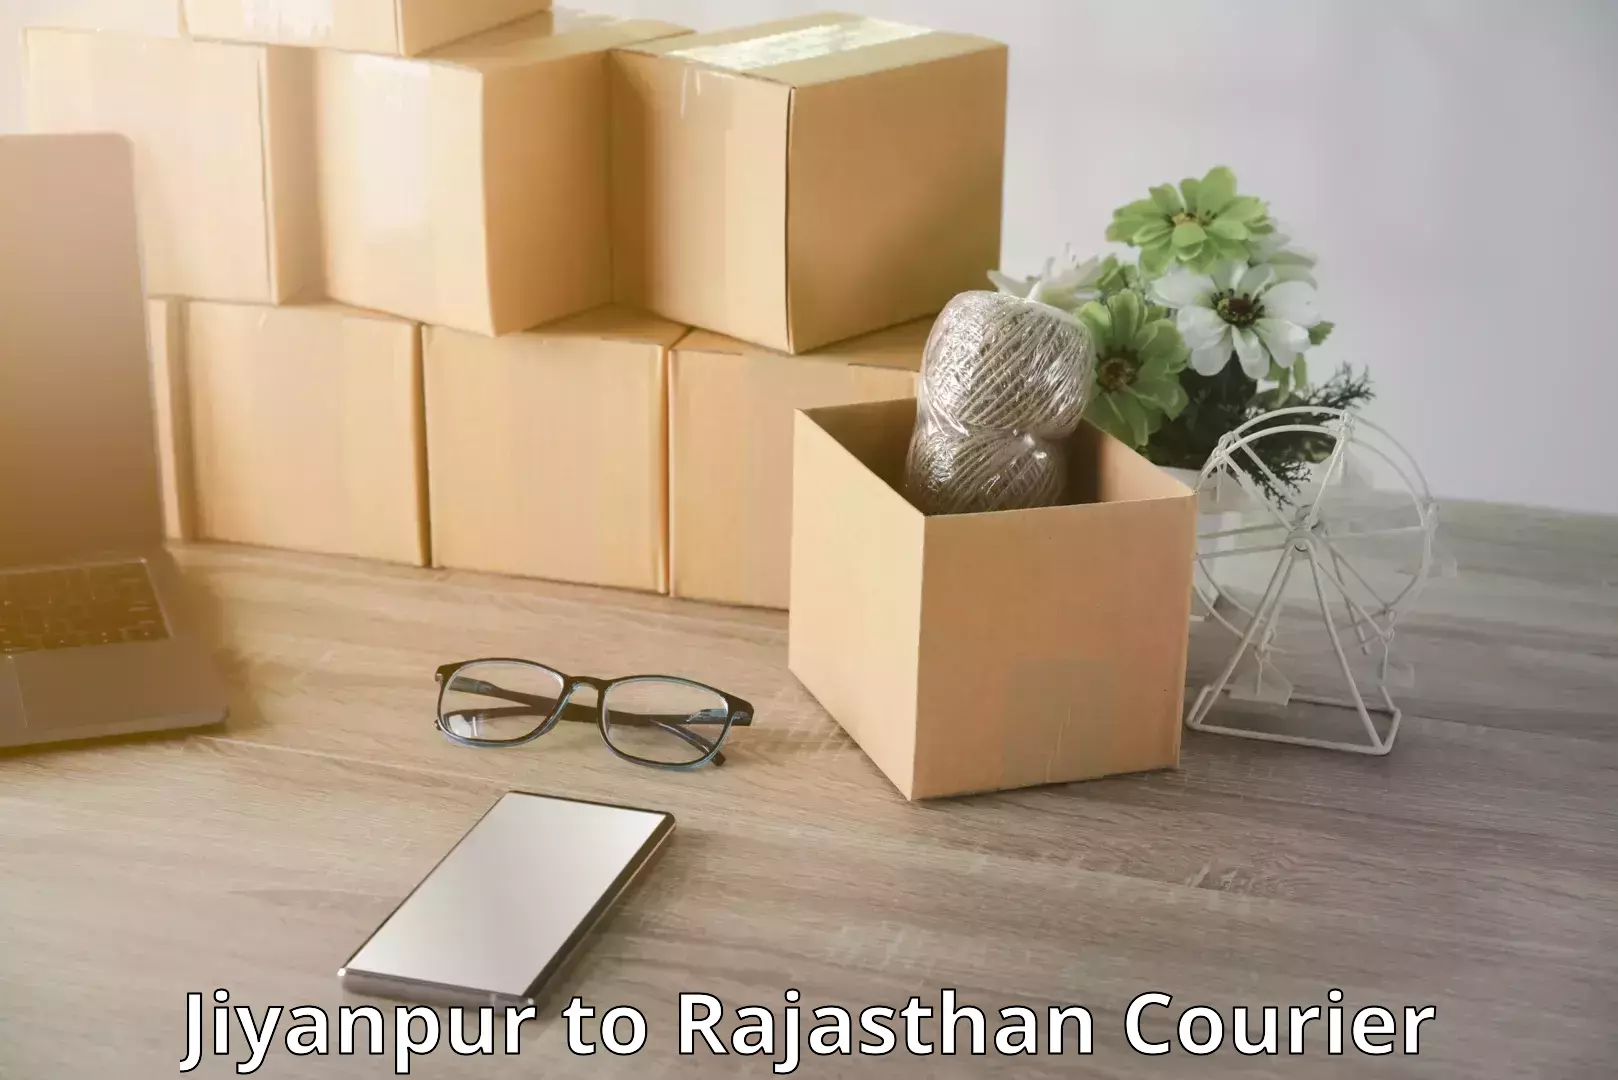 Luggage shipment tracking Jiyanpur to Rajasthan